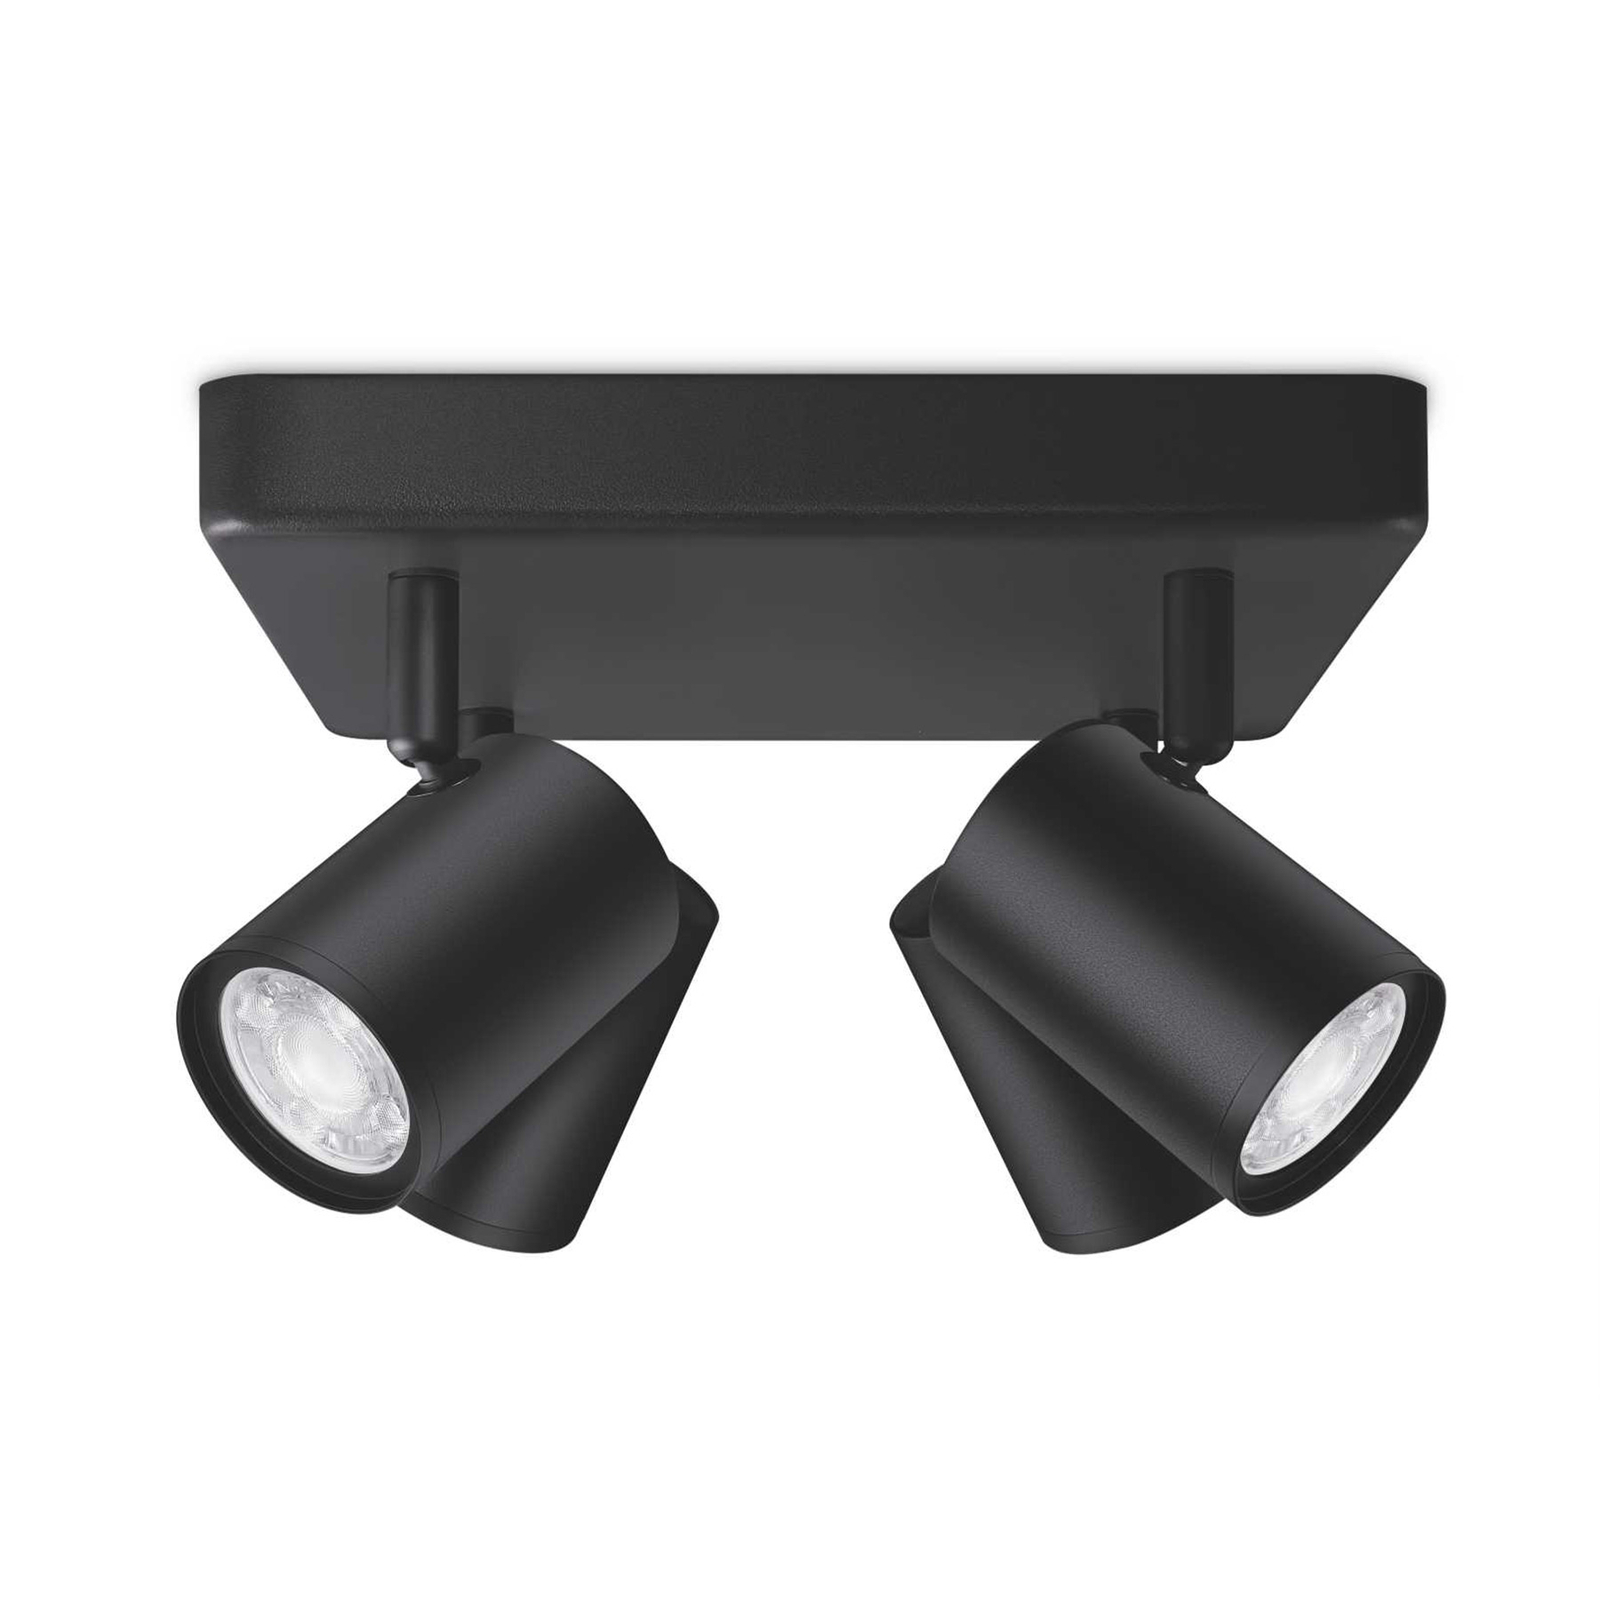 "WiZ LED" lubų taškinis šviestuvas "Imageo", 4fl kvadrato formos, juodas